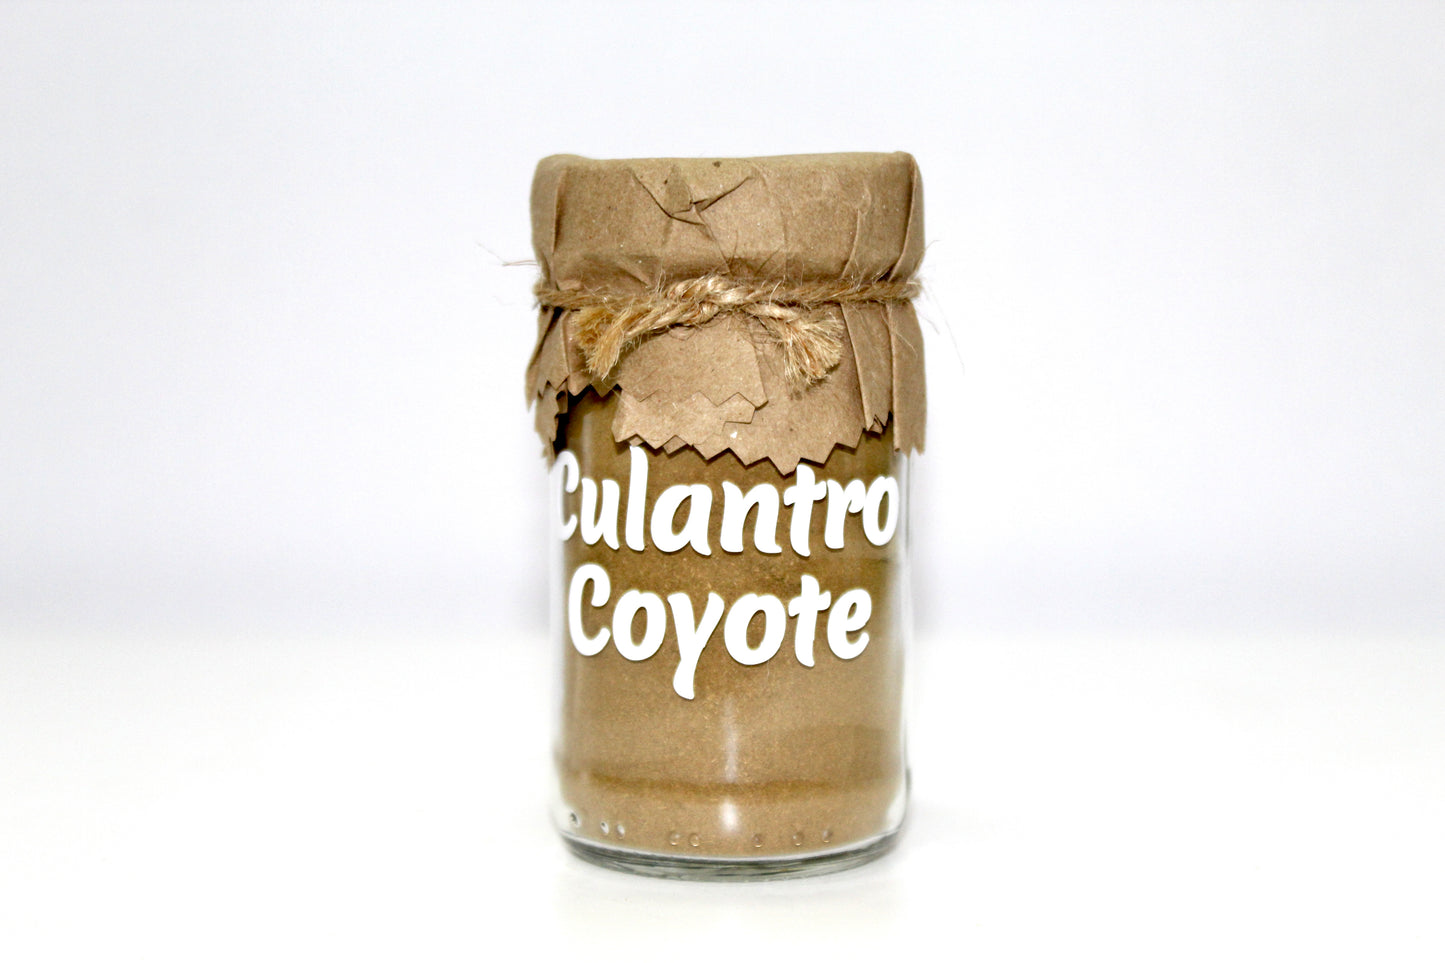 Culantro Coyote en polvo (45g)